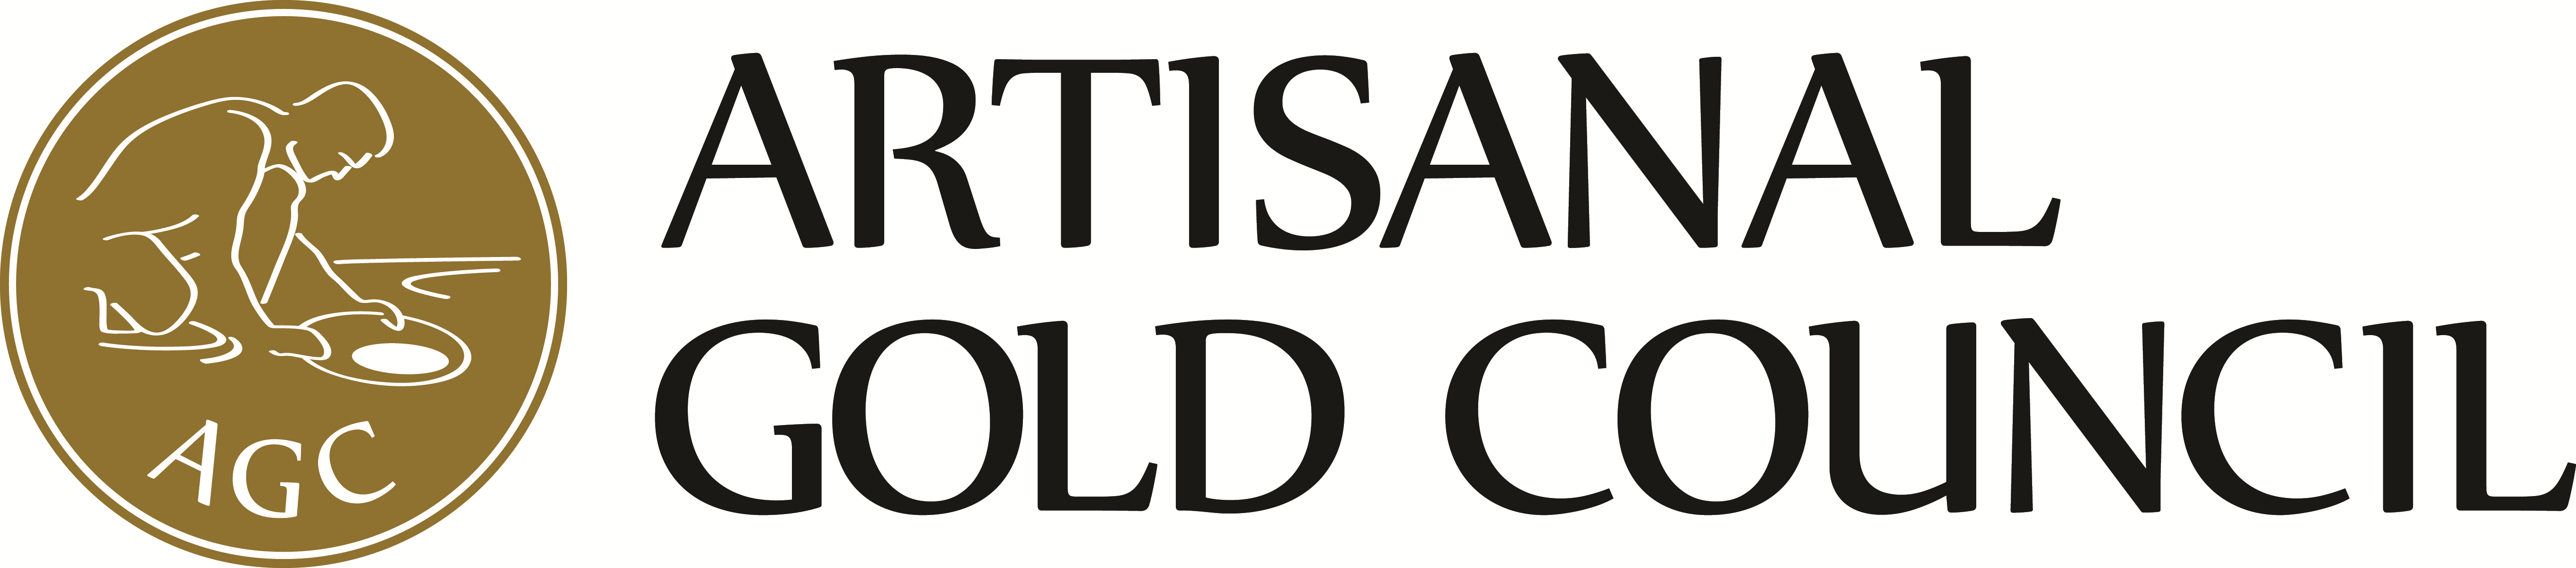 Artisanal Gold Council logo